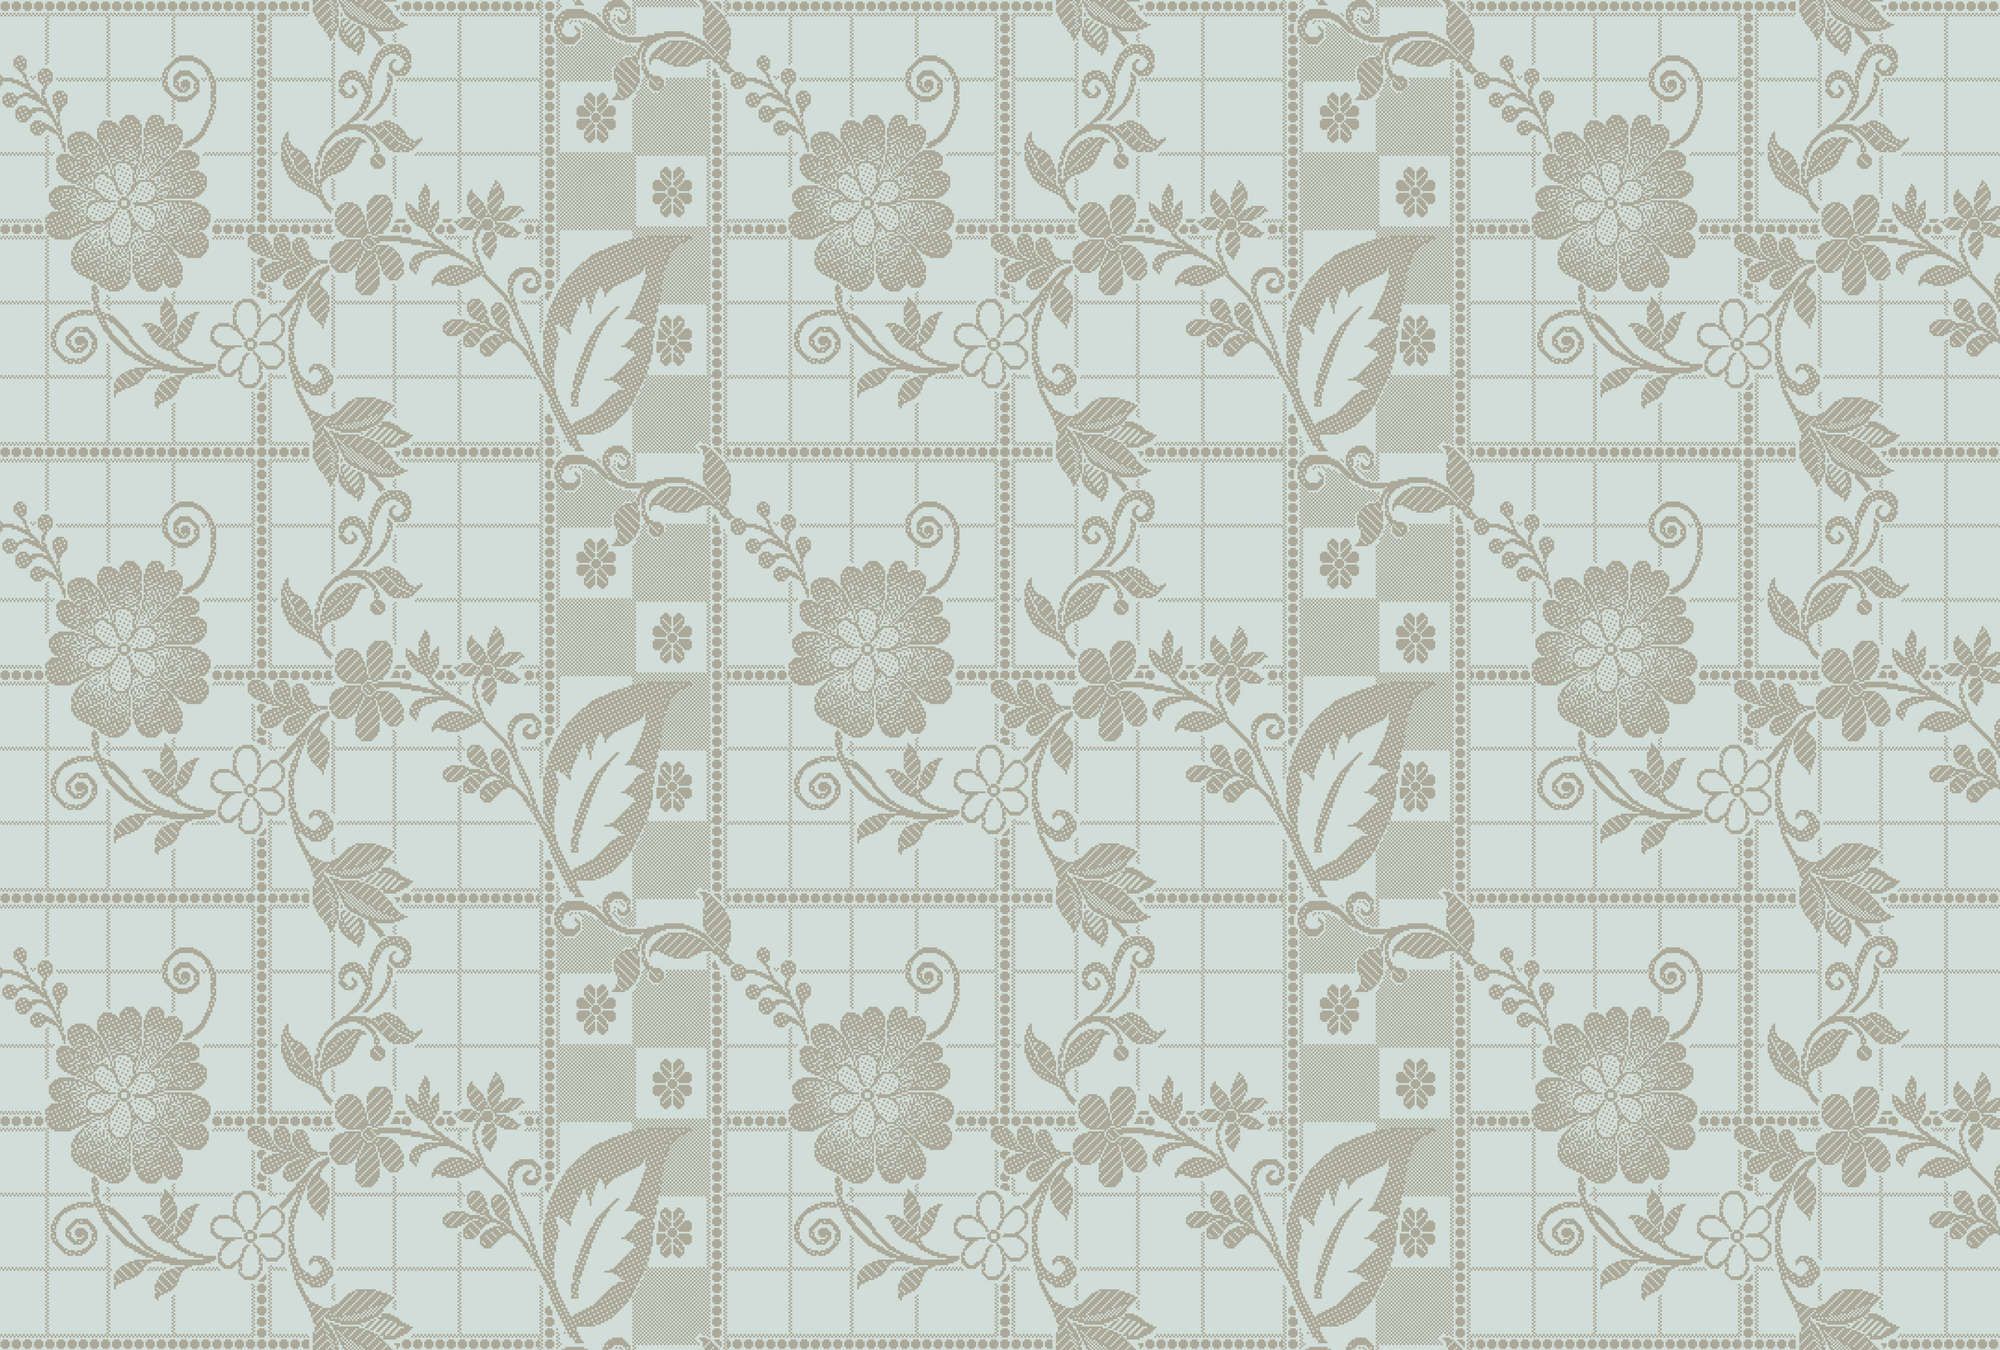             Fotomural »valerie« - Pequeños cuadrados pixelados con flores - Verde menta claro | Tela sin tejer lisa, ligeramente nacarada
        